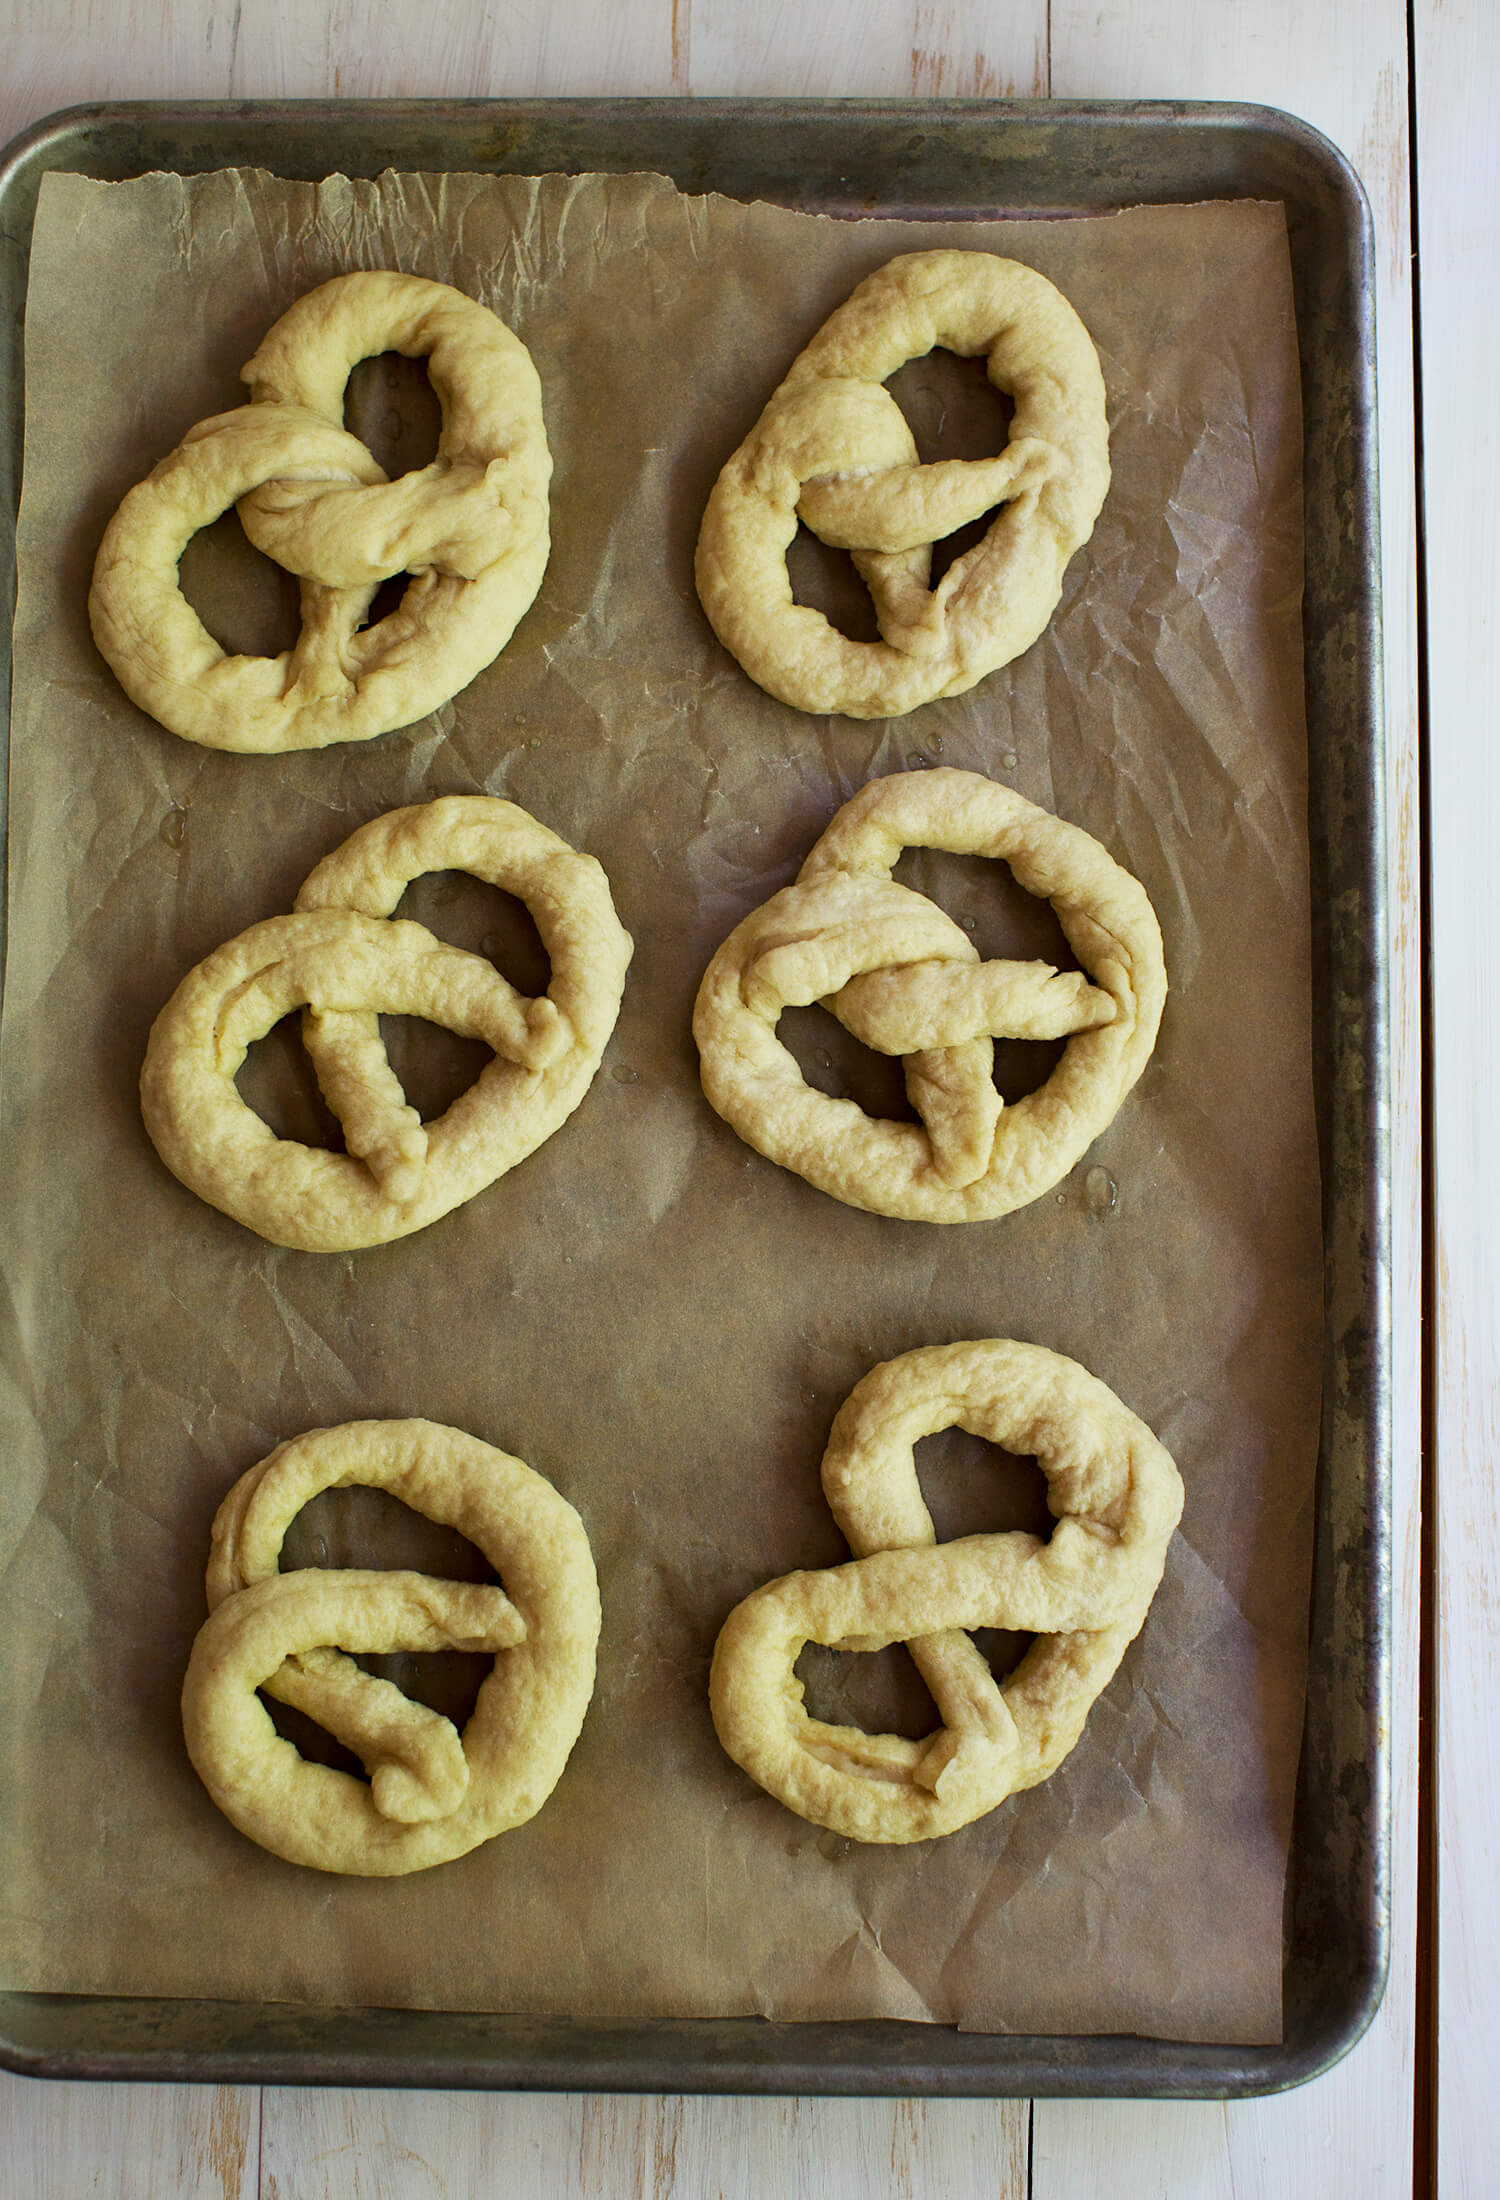 How to make soft pretzels